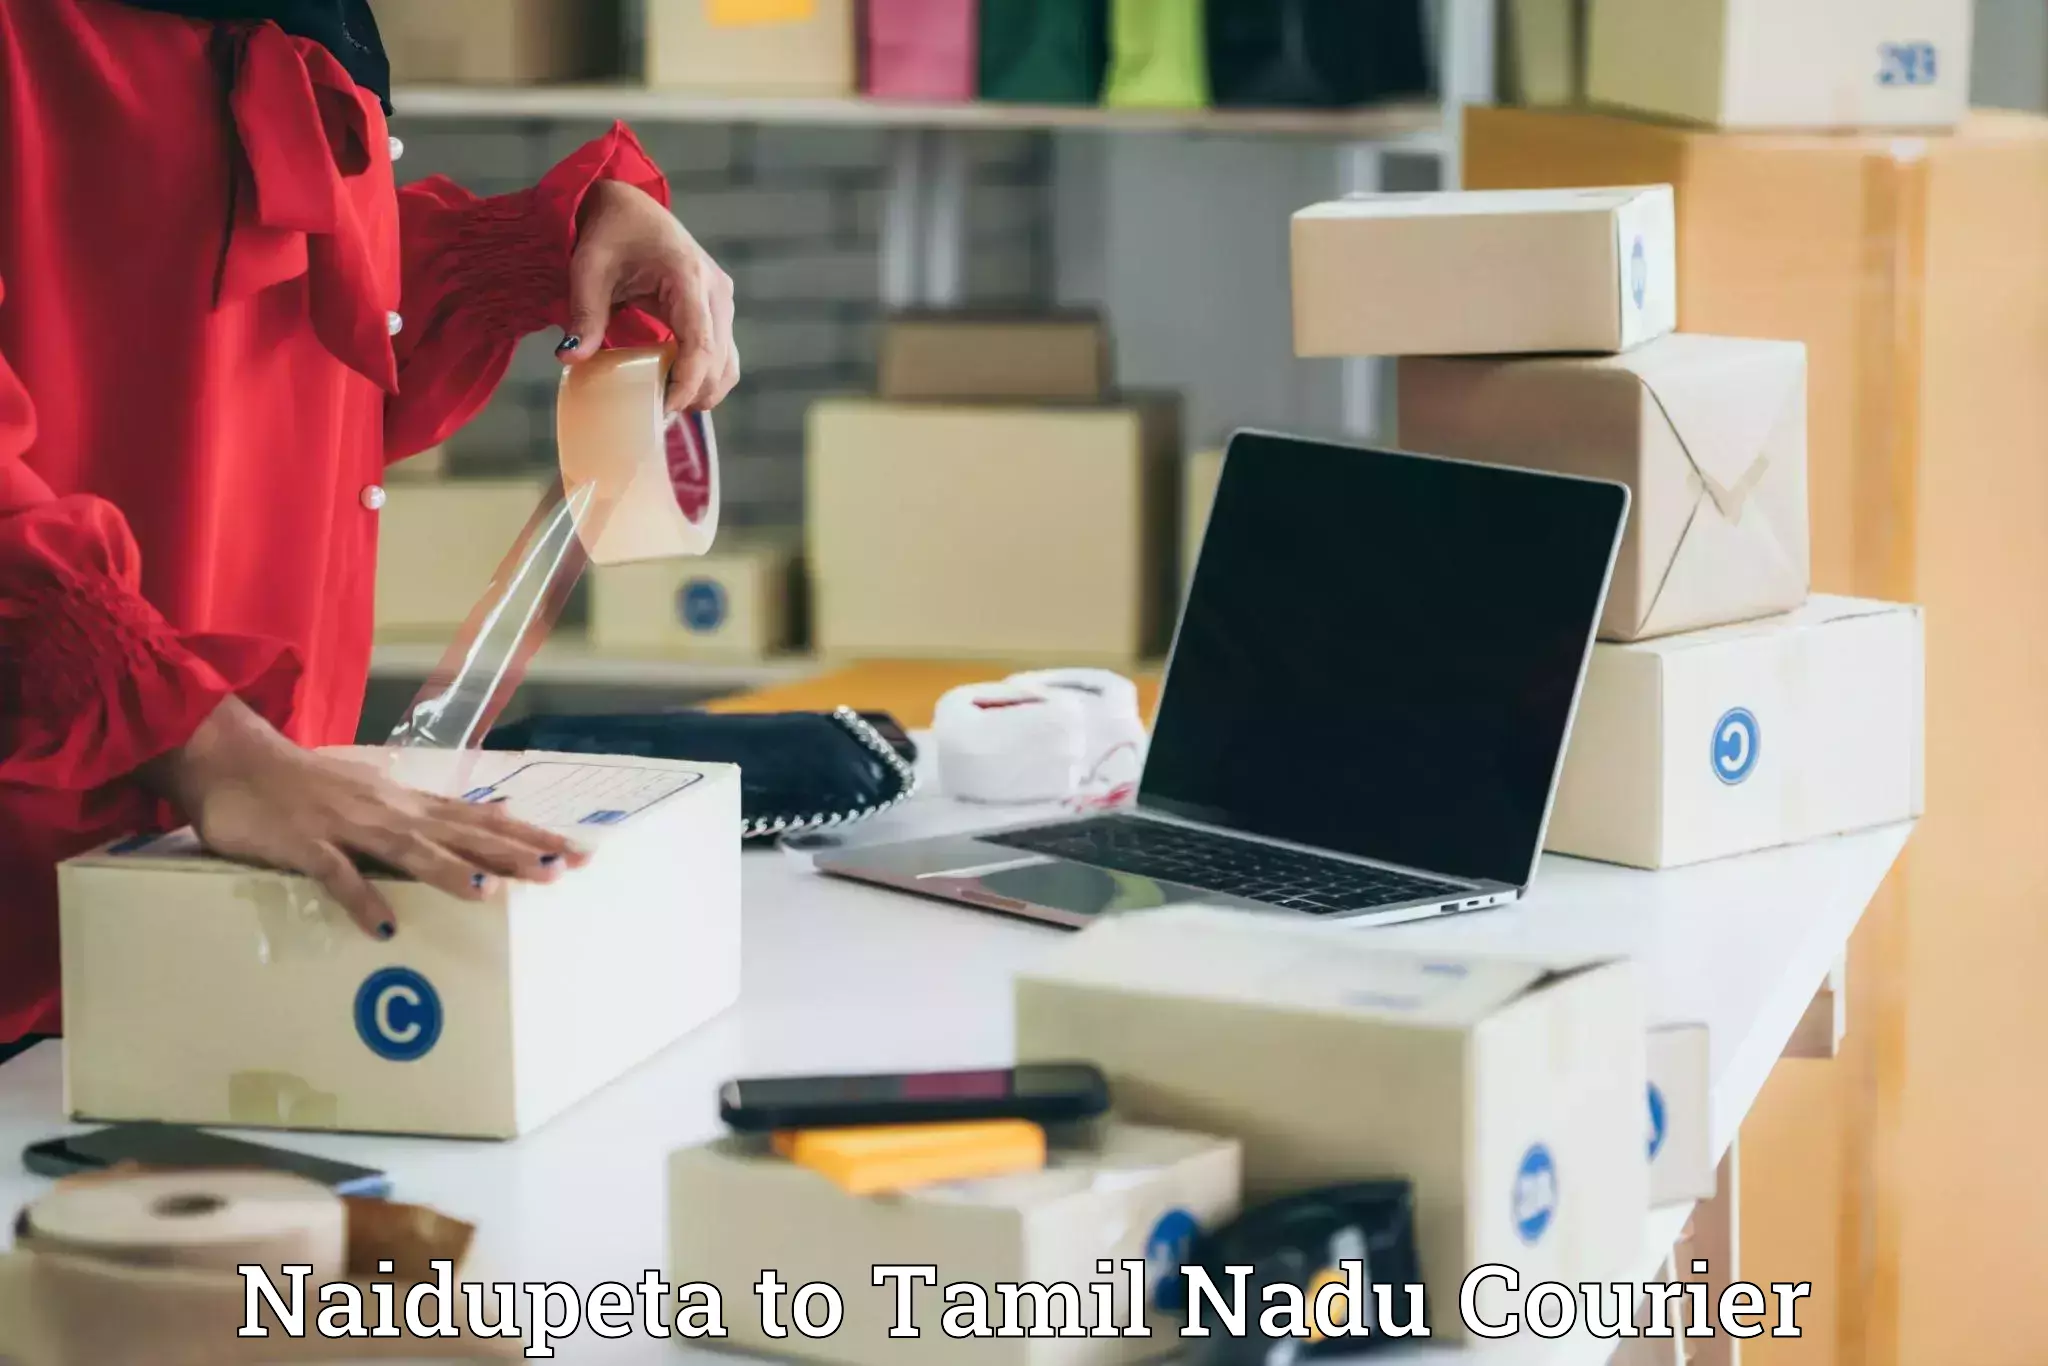 Speedy delivery service Naidupeta to Tamil Nadu